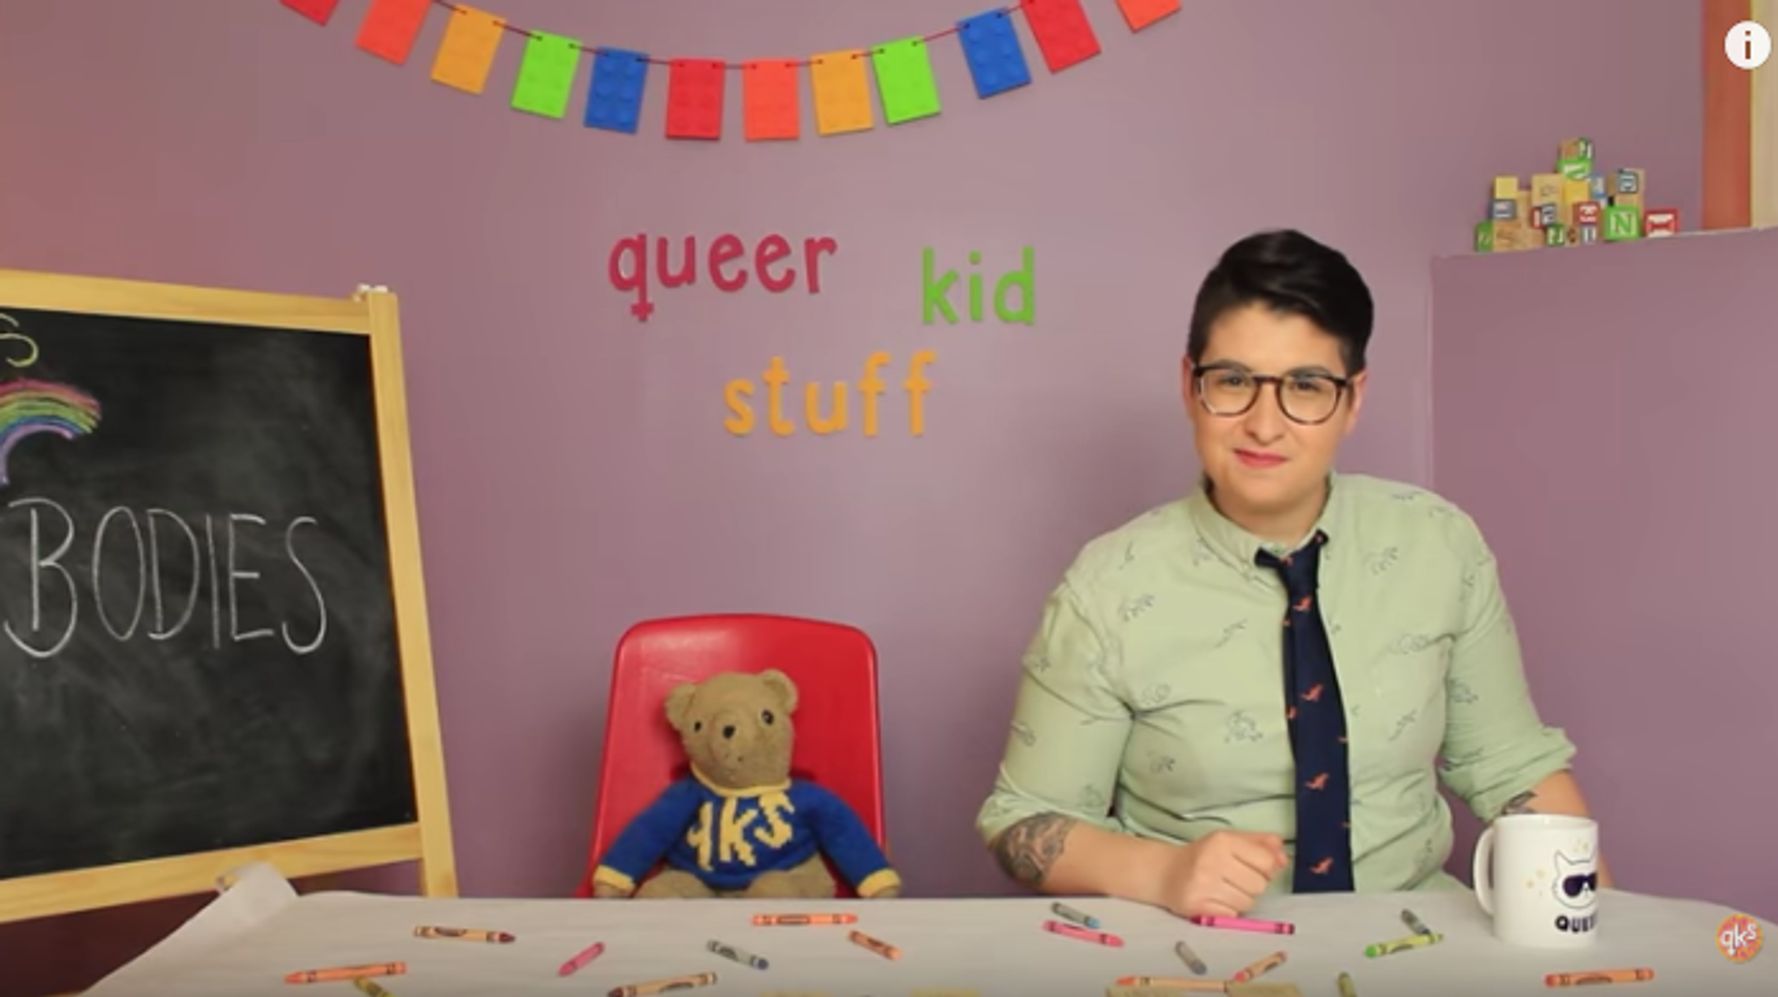 Queer Kid Stuff